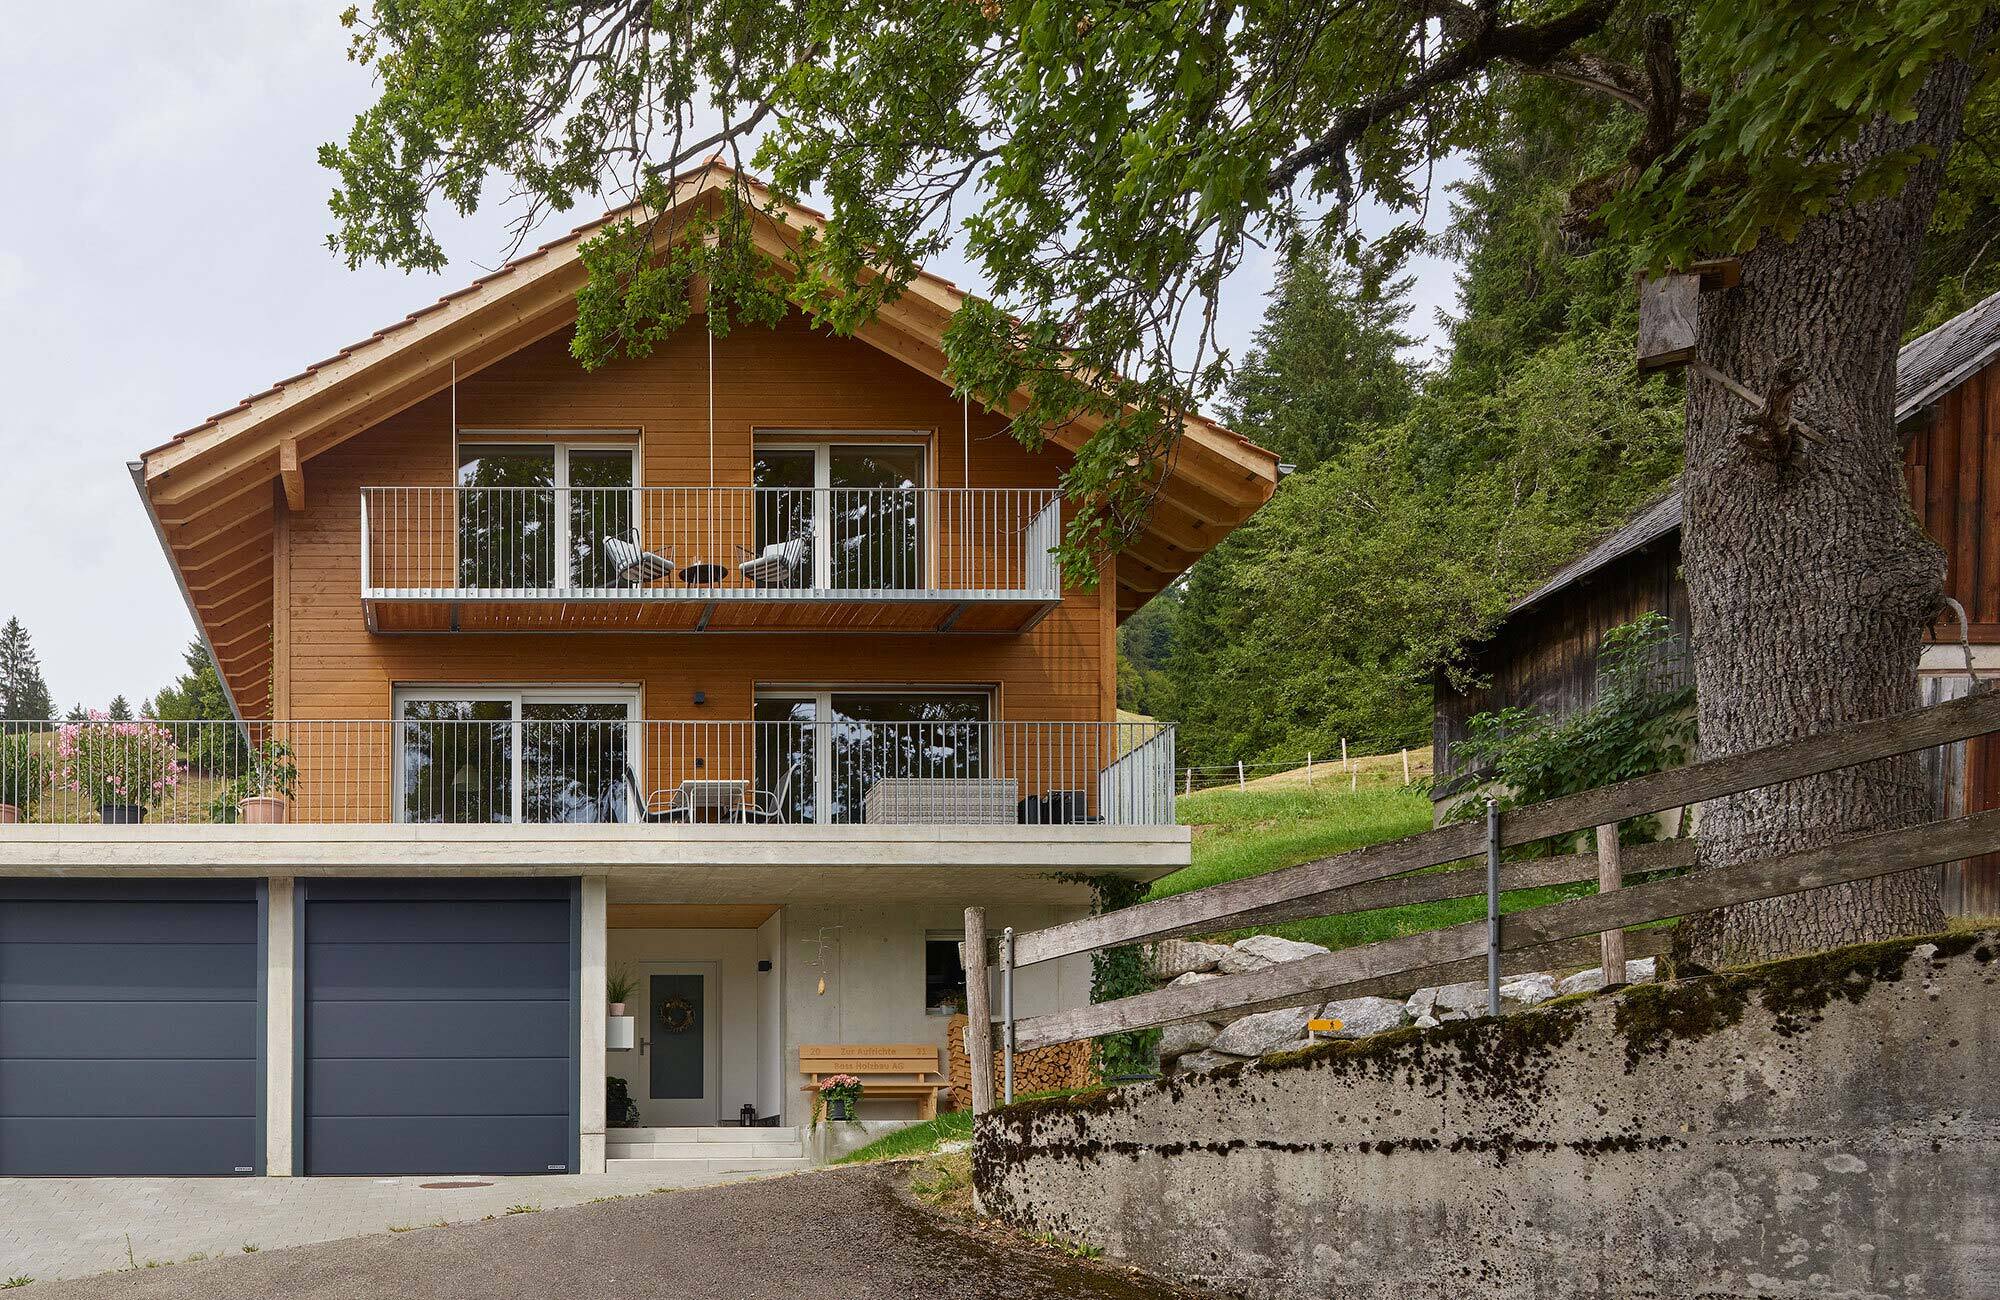 Einfamilienhaus mit schöner Holzfassade